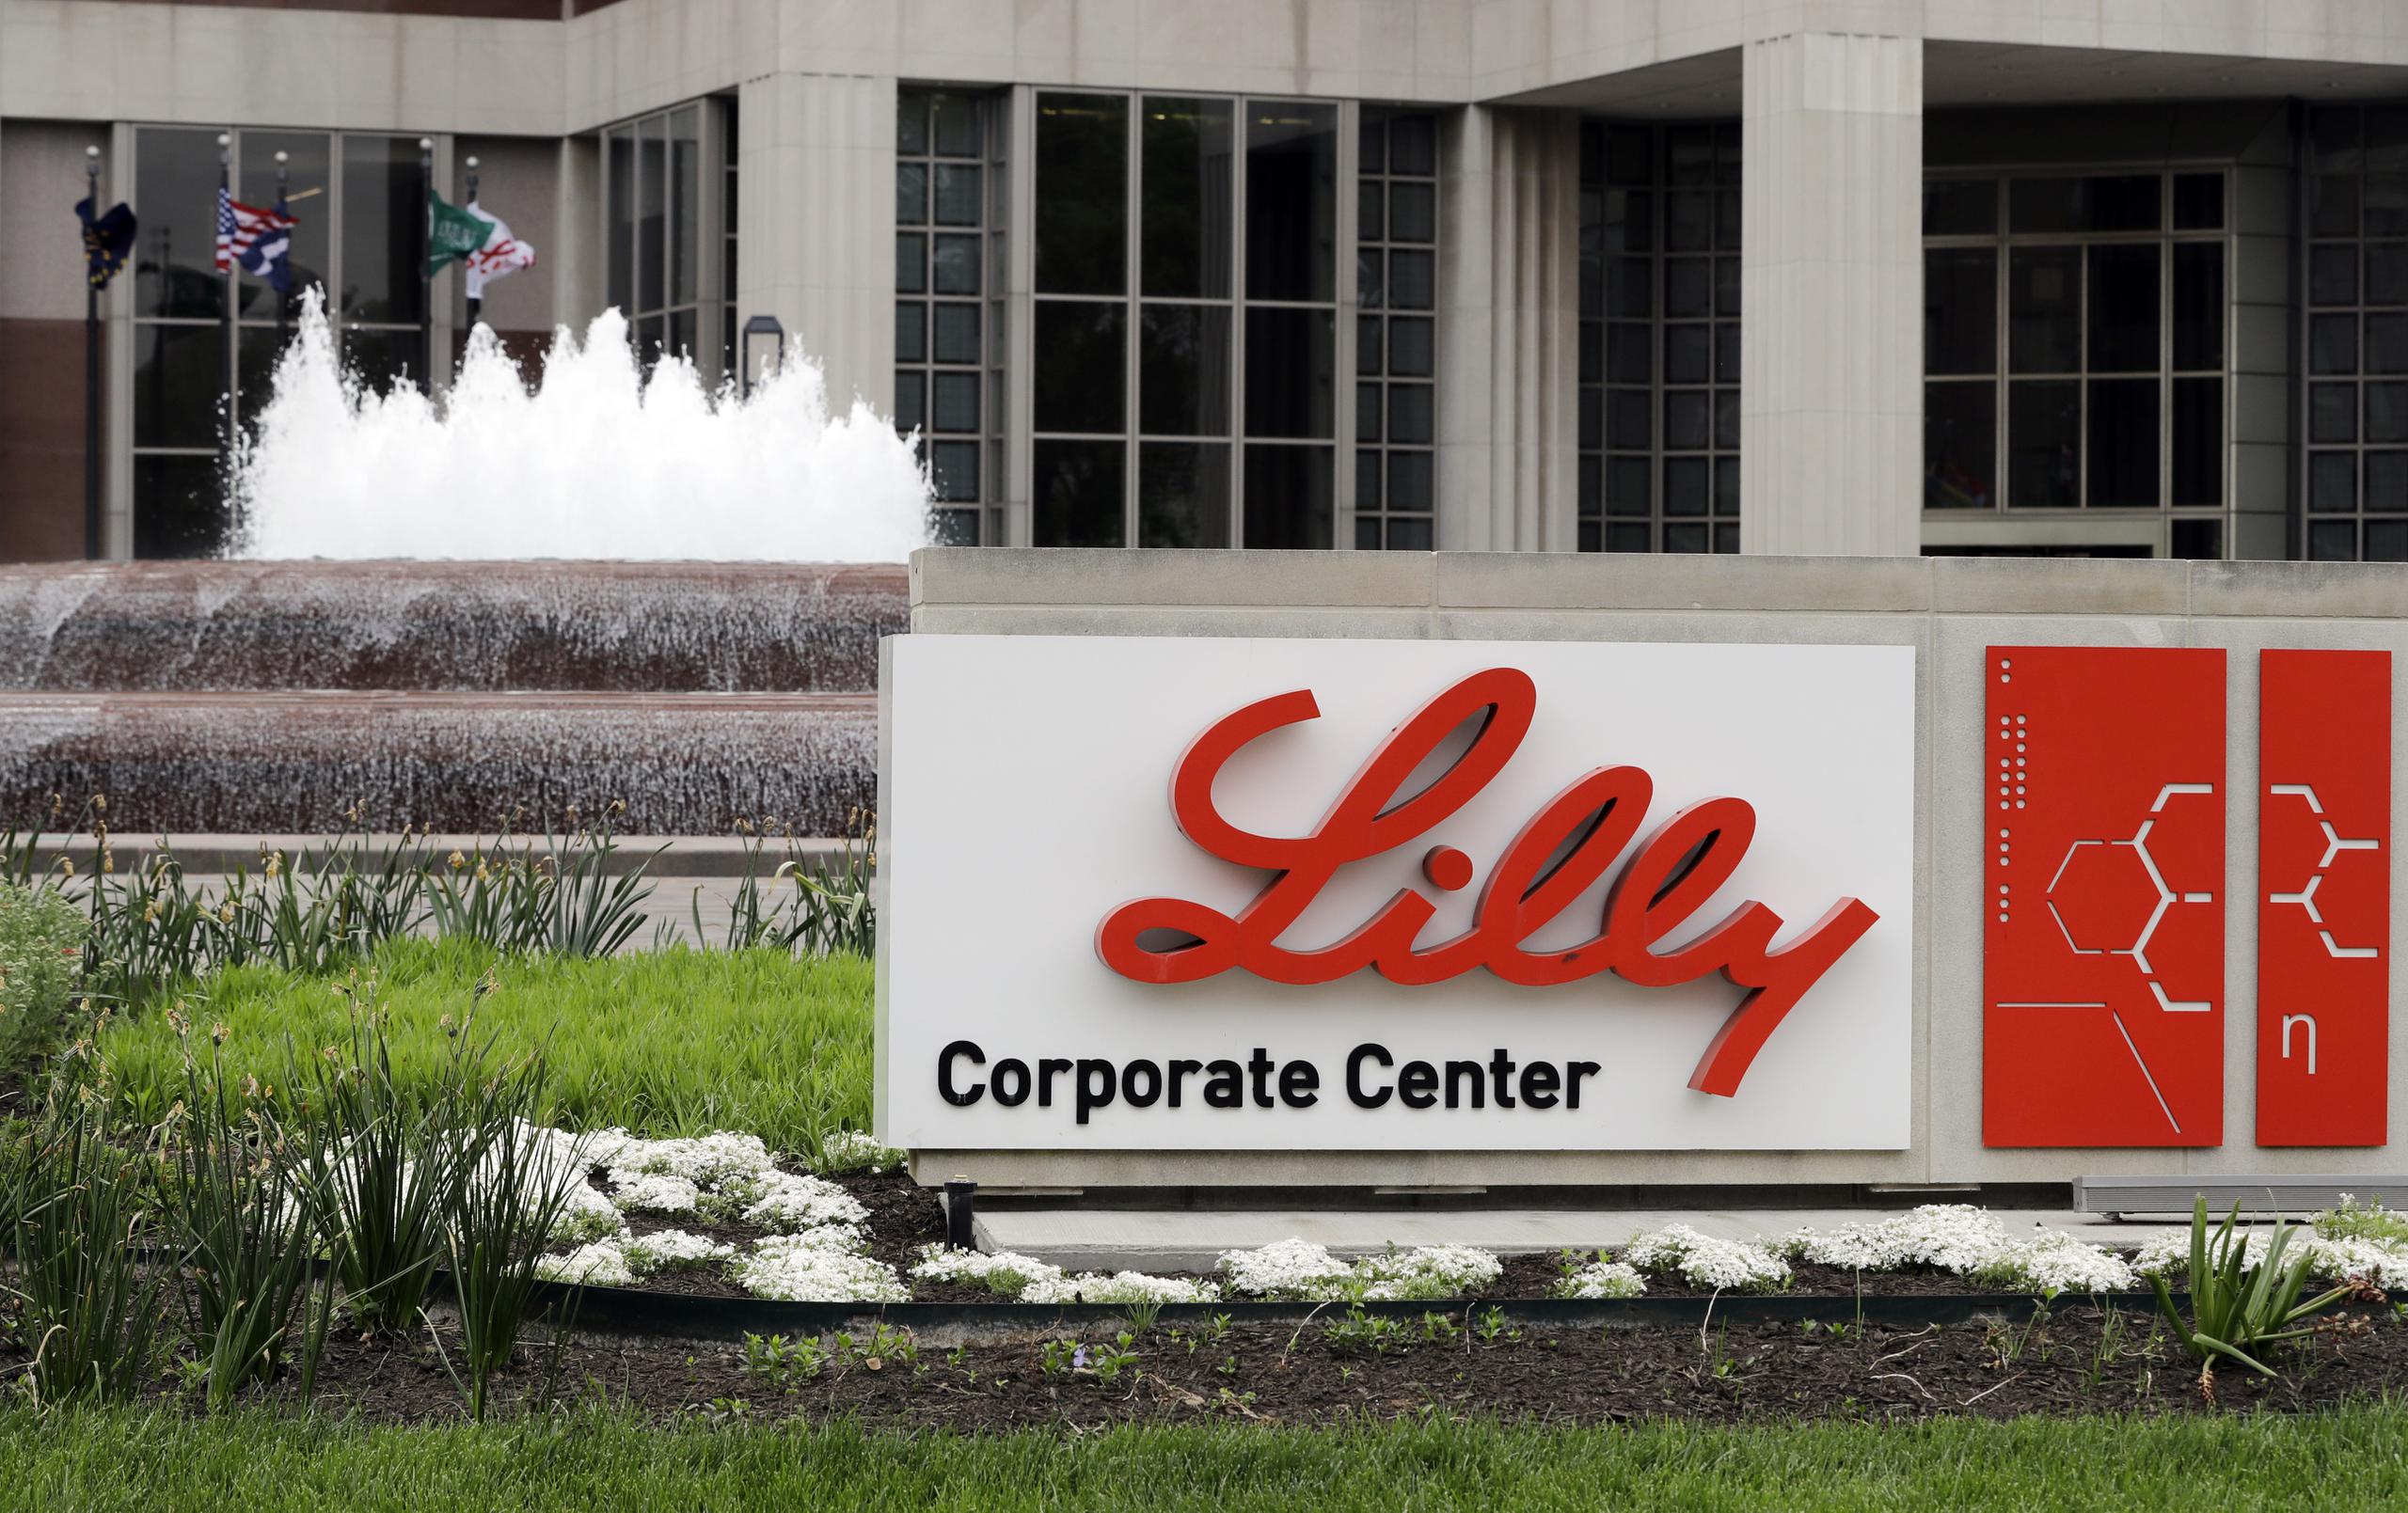 Oficinas corporativas de la farmacéutica Eli Lilly en Indianápolis.